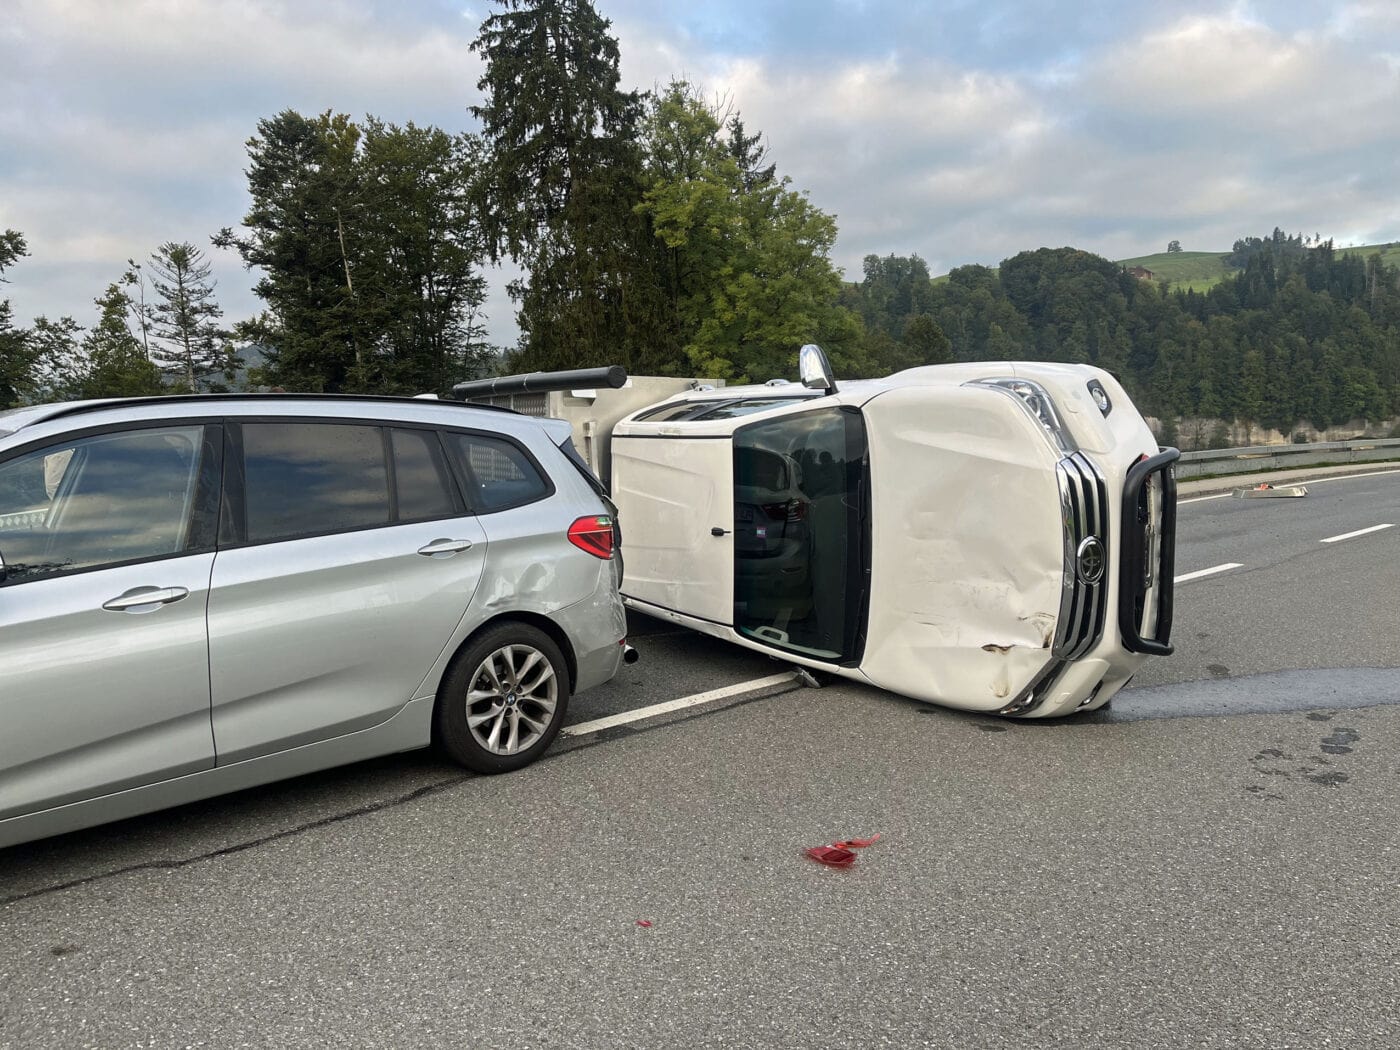 Kollision zwischen Auto und Lieferwagen – niemand verletzt